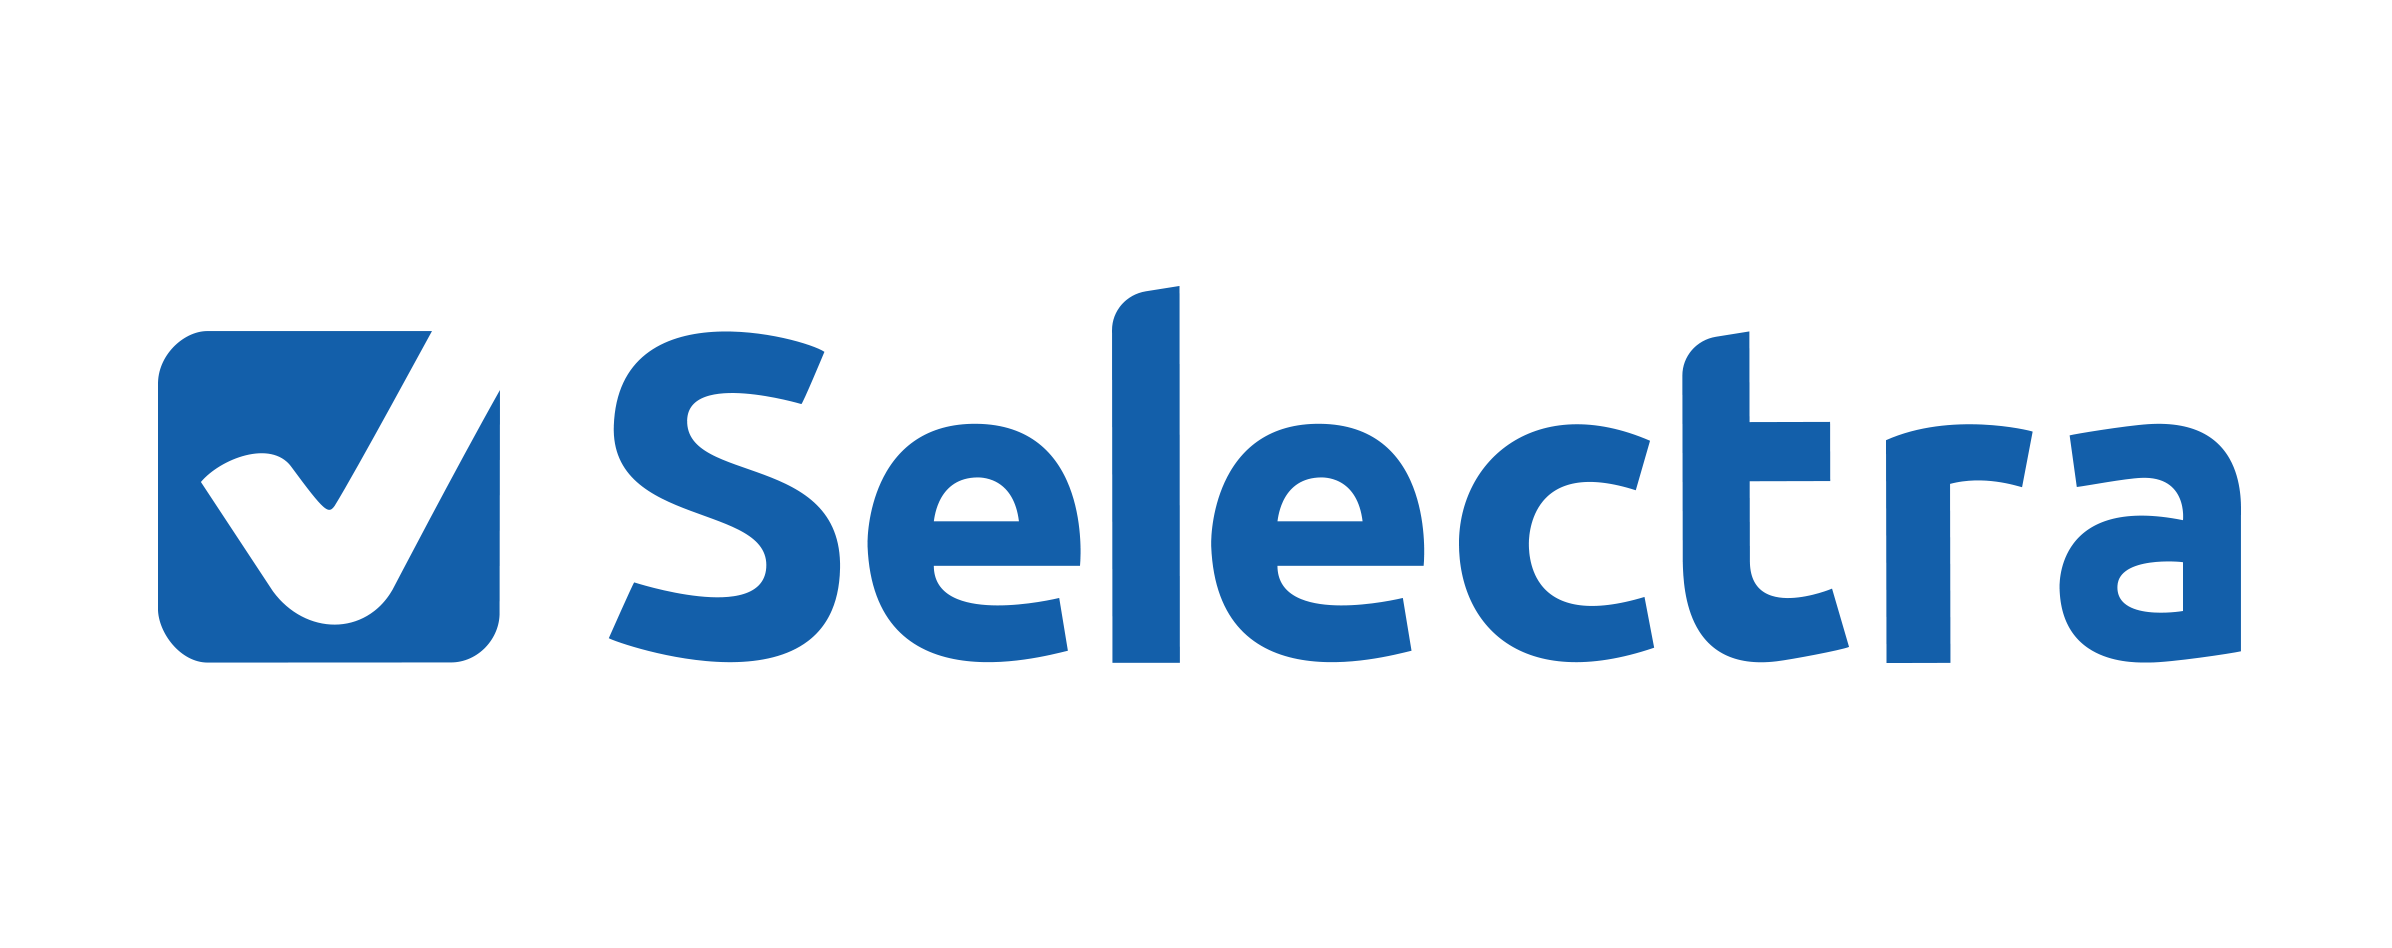 Logo Selectra